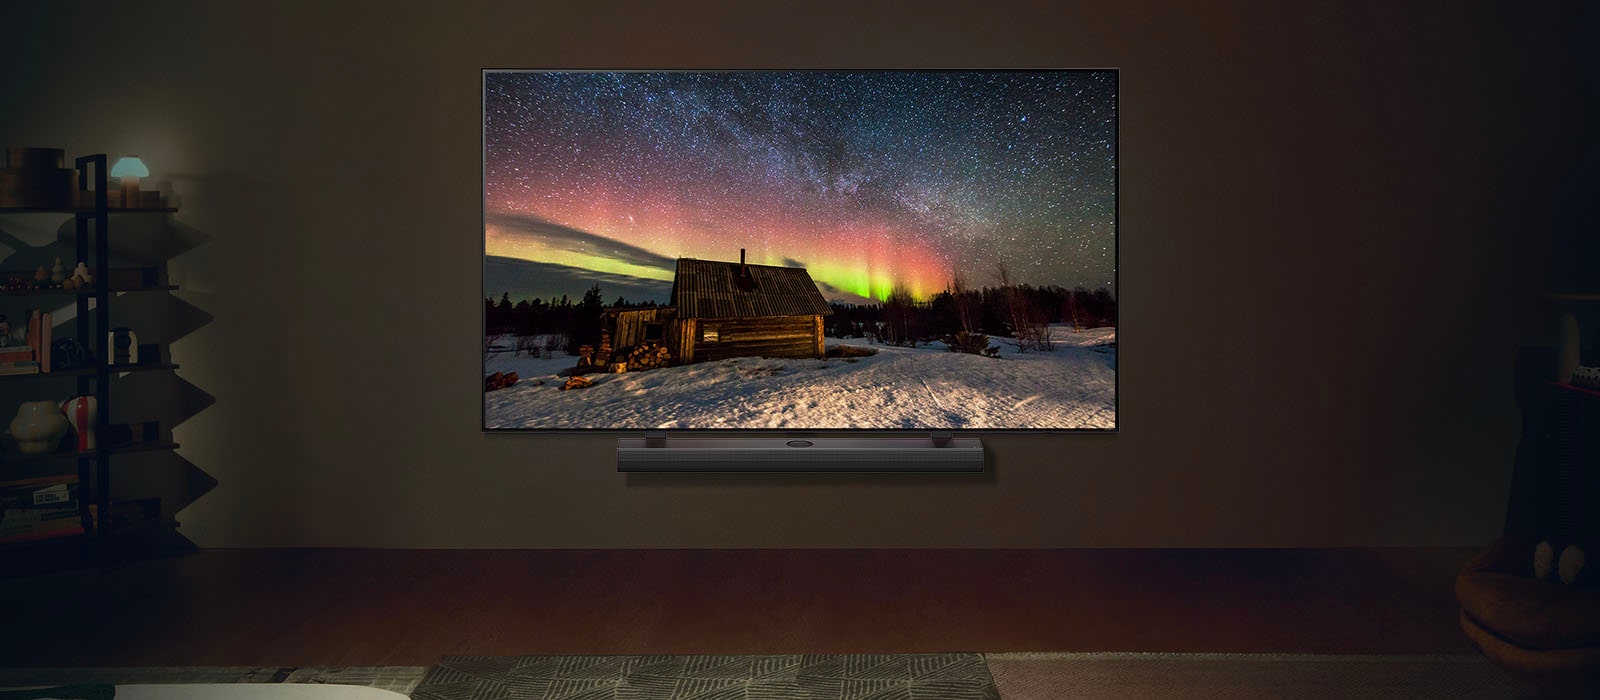 LG TV i LG Soundbar w nowoczesnej przestrzeni w nocy. Obraz zorzy polarnej wyświetlany jest z idealnym poziomem jasności.